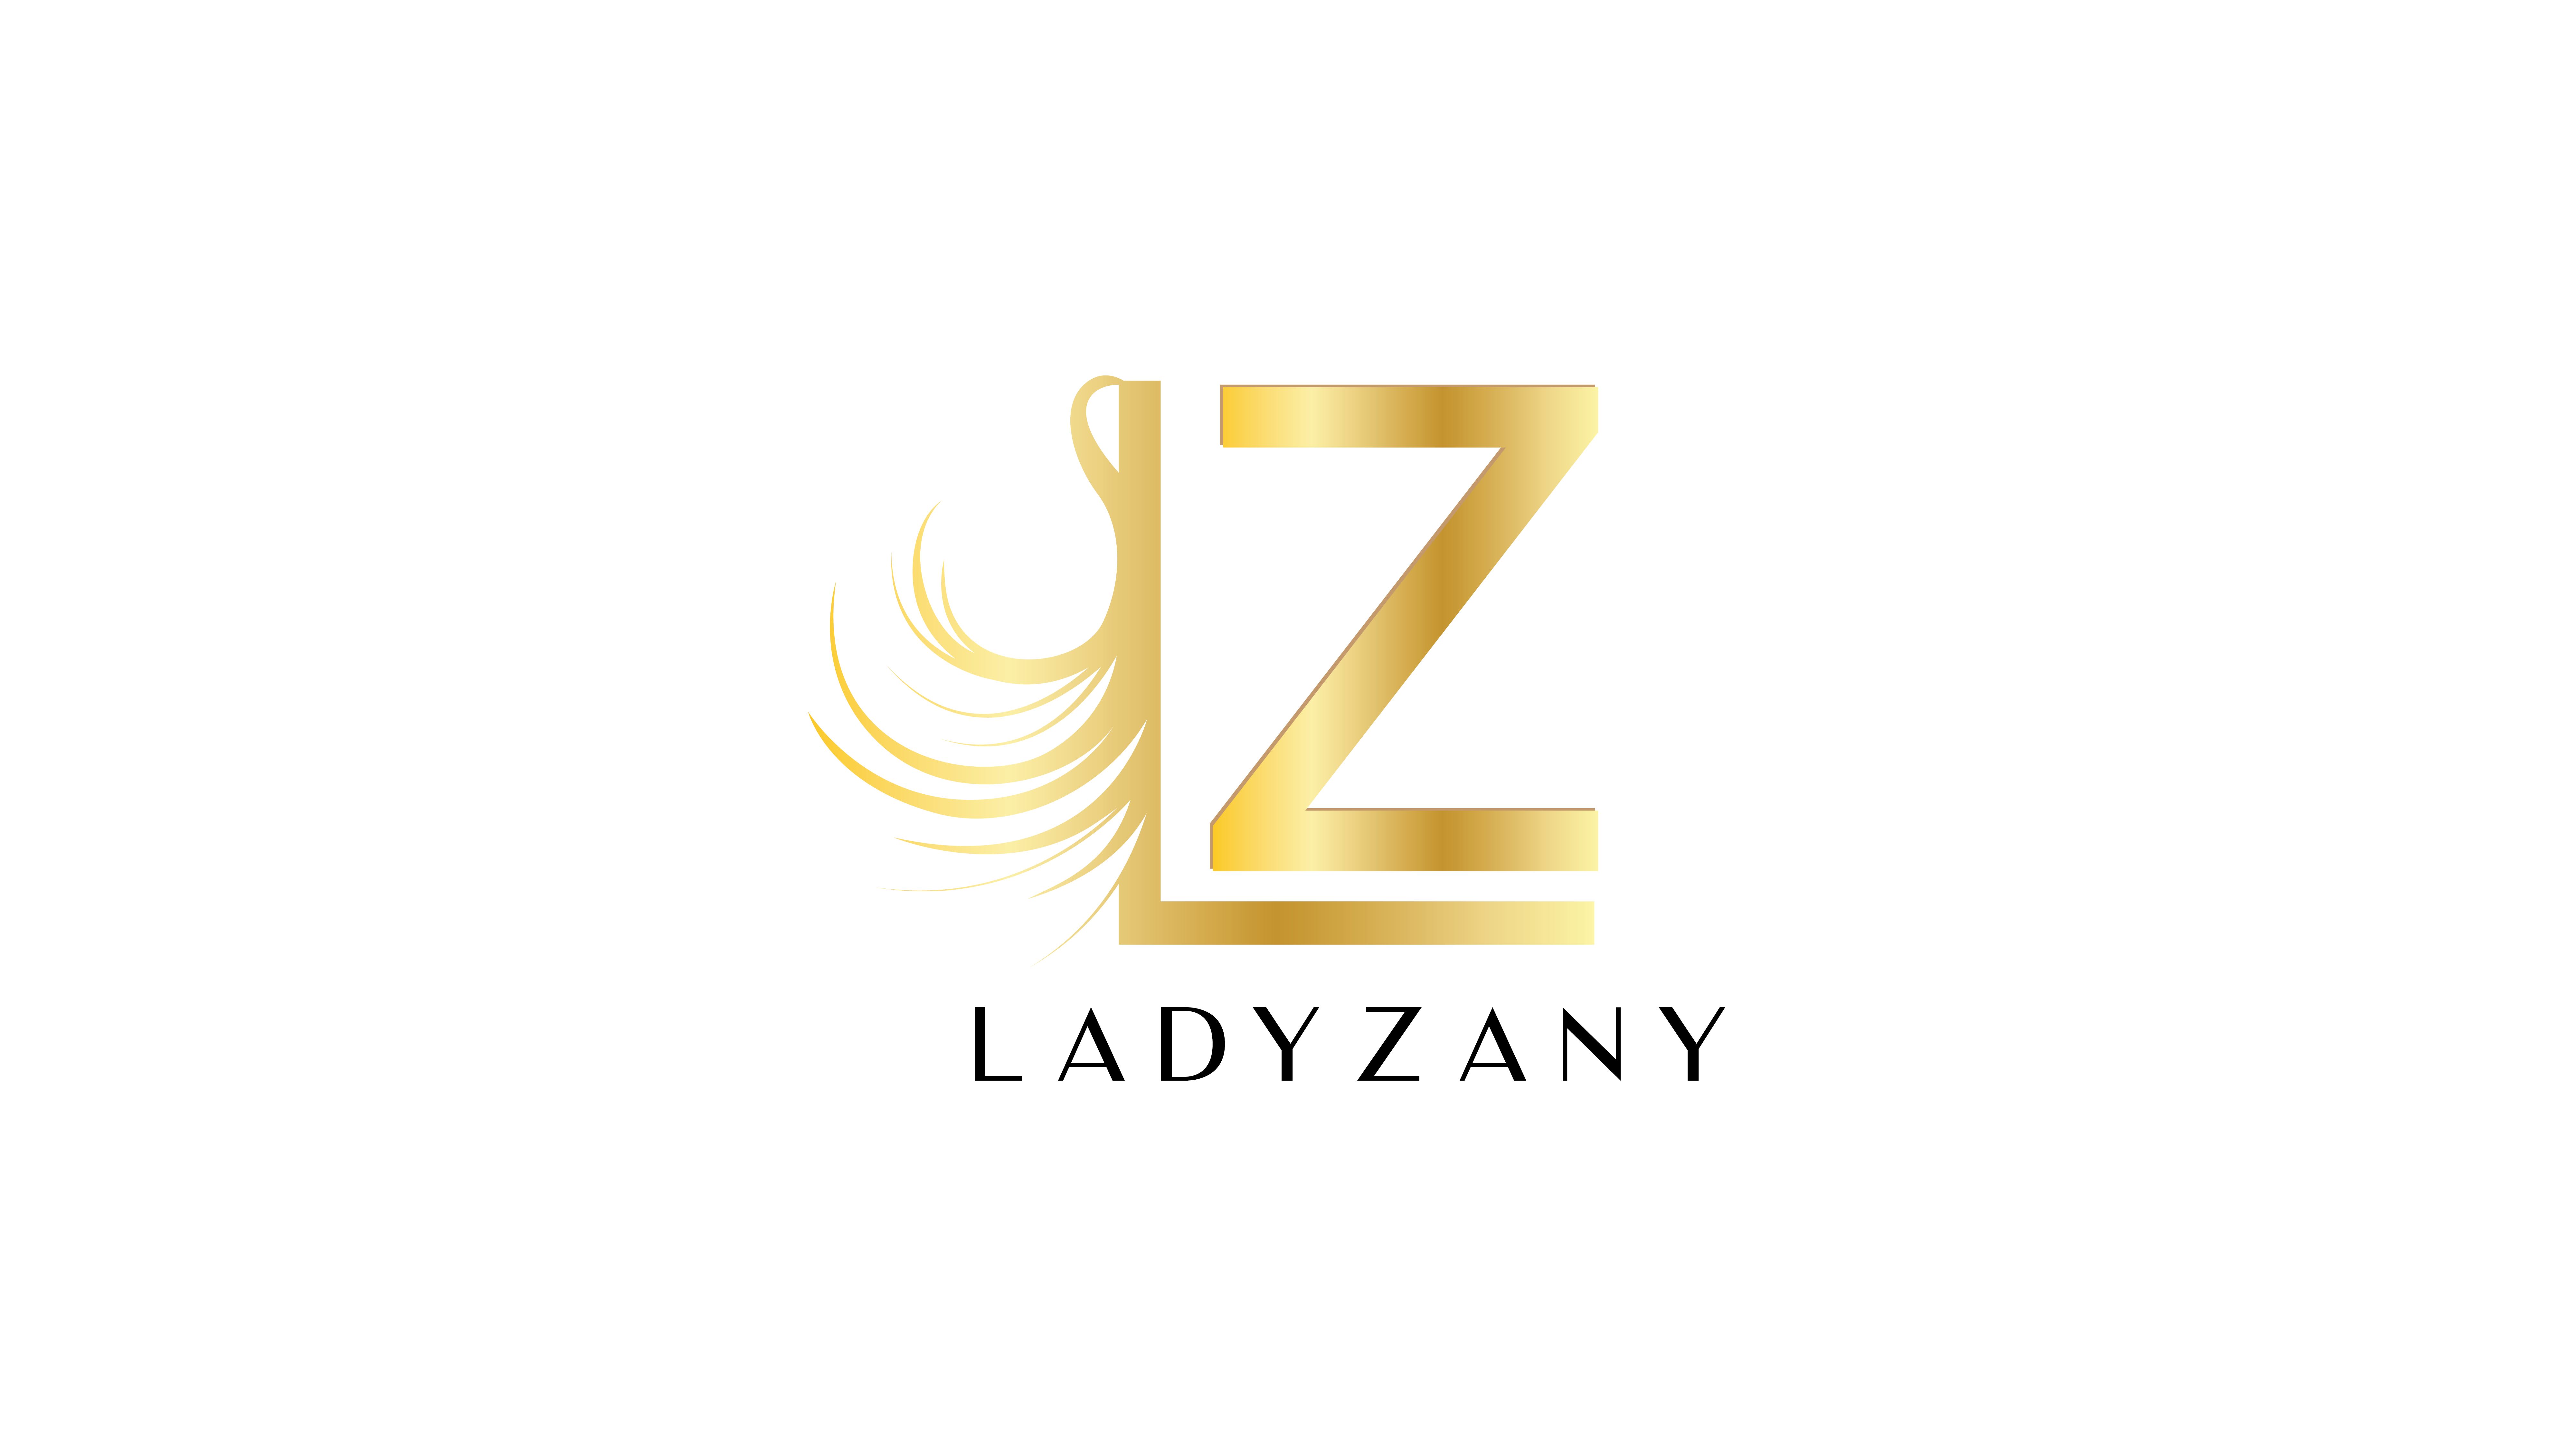 Lady Zany